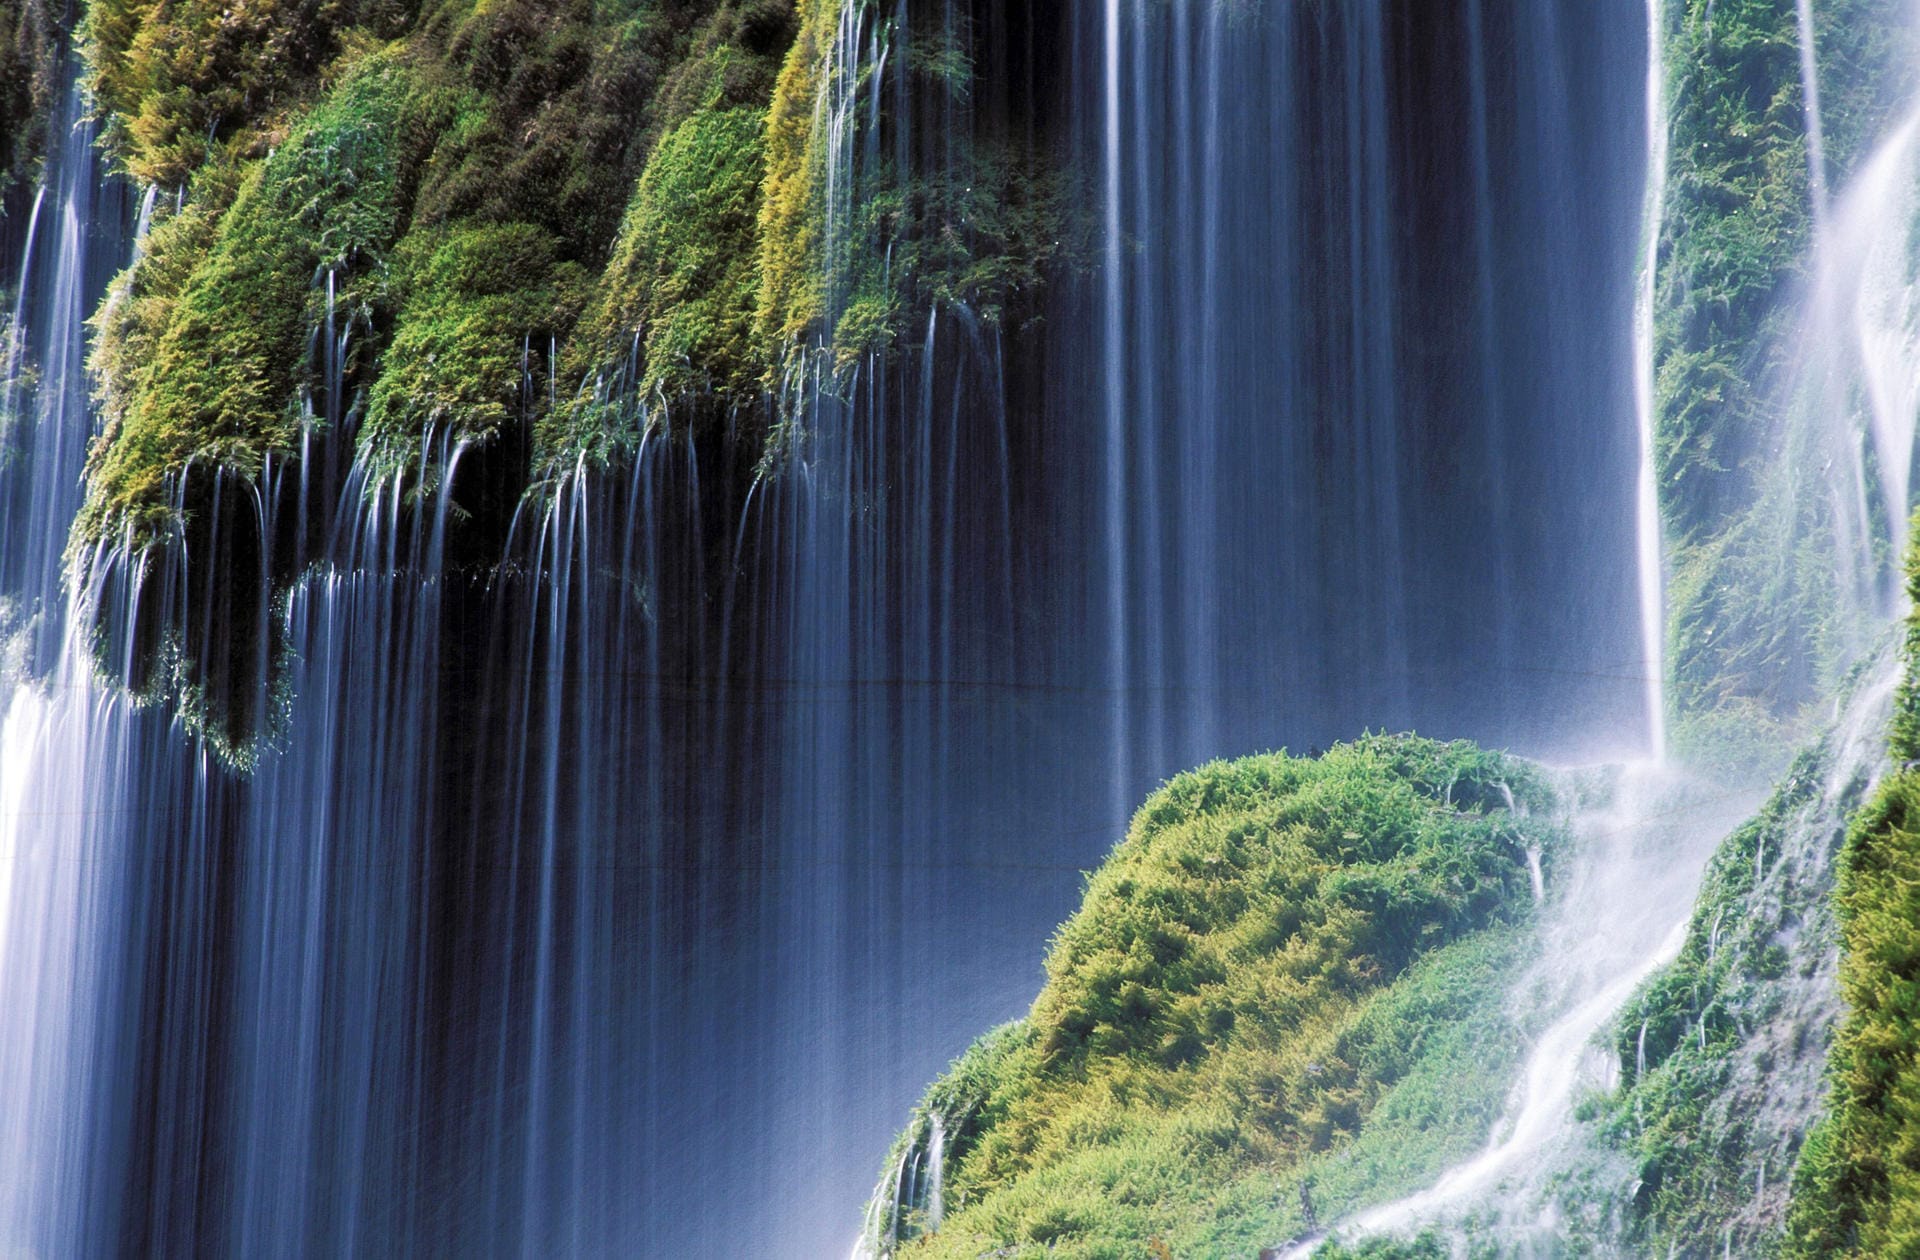 Wasserfälle wie dieser heir sind ein klasse Naturwunder.